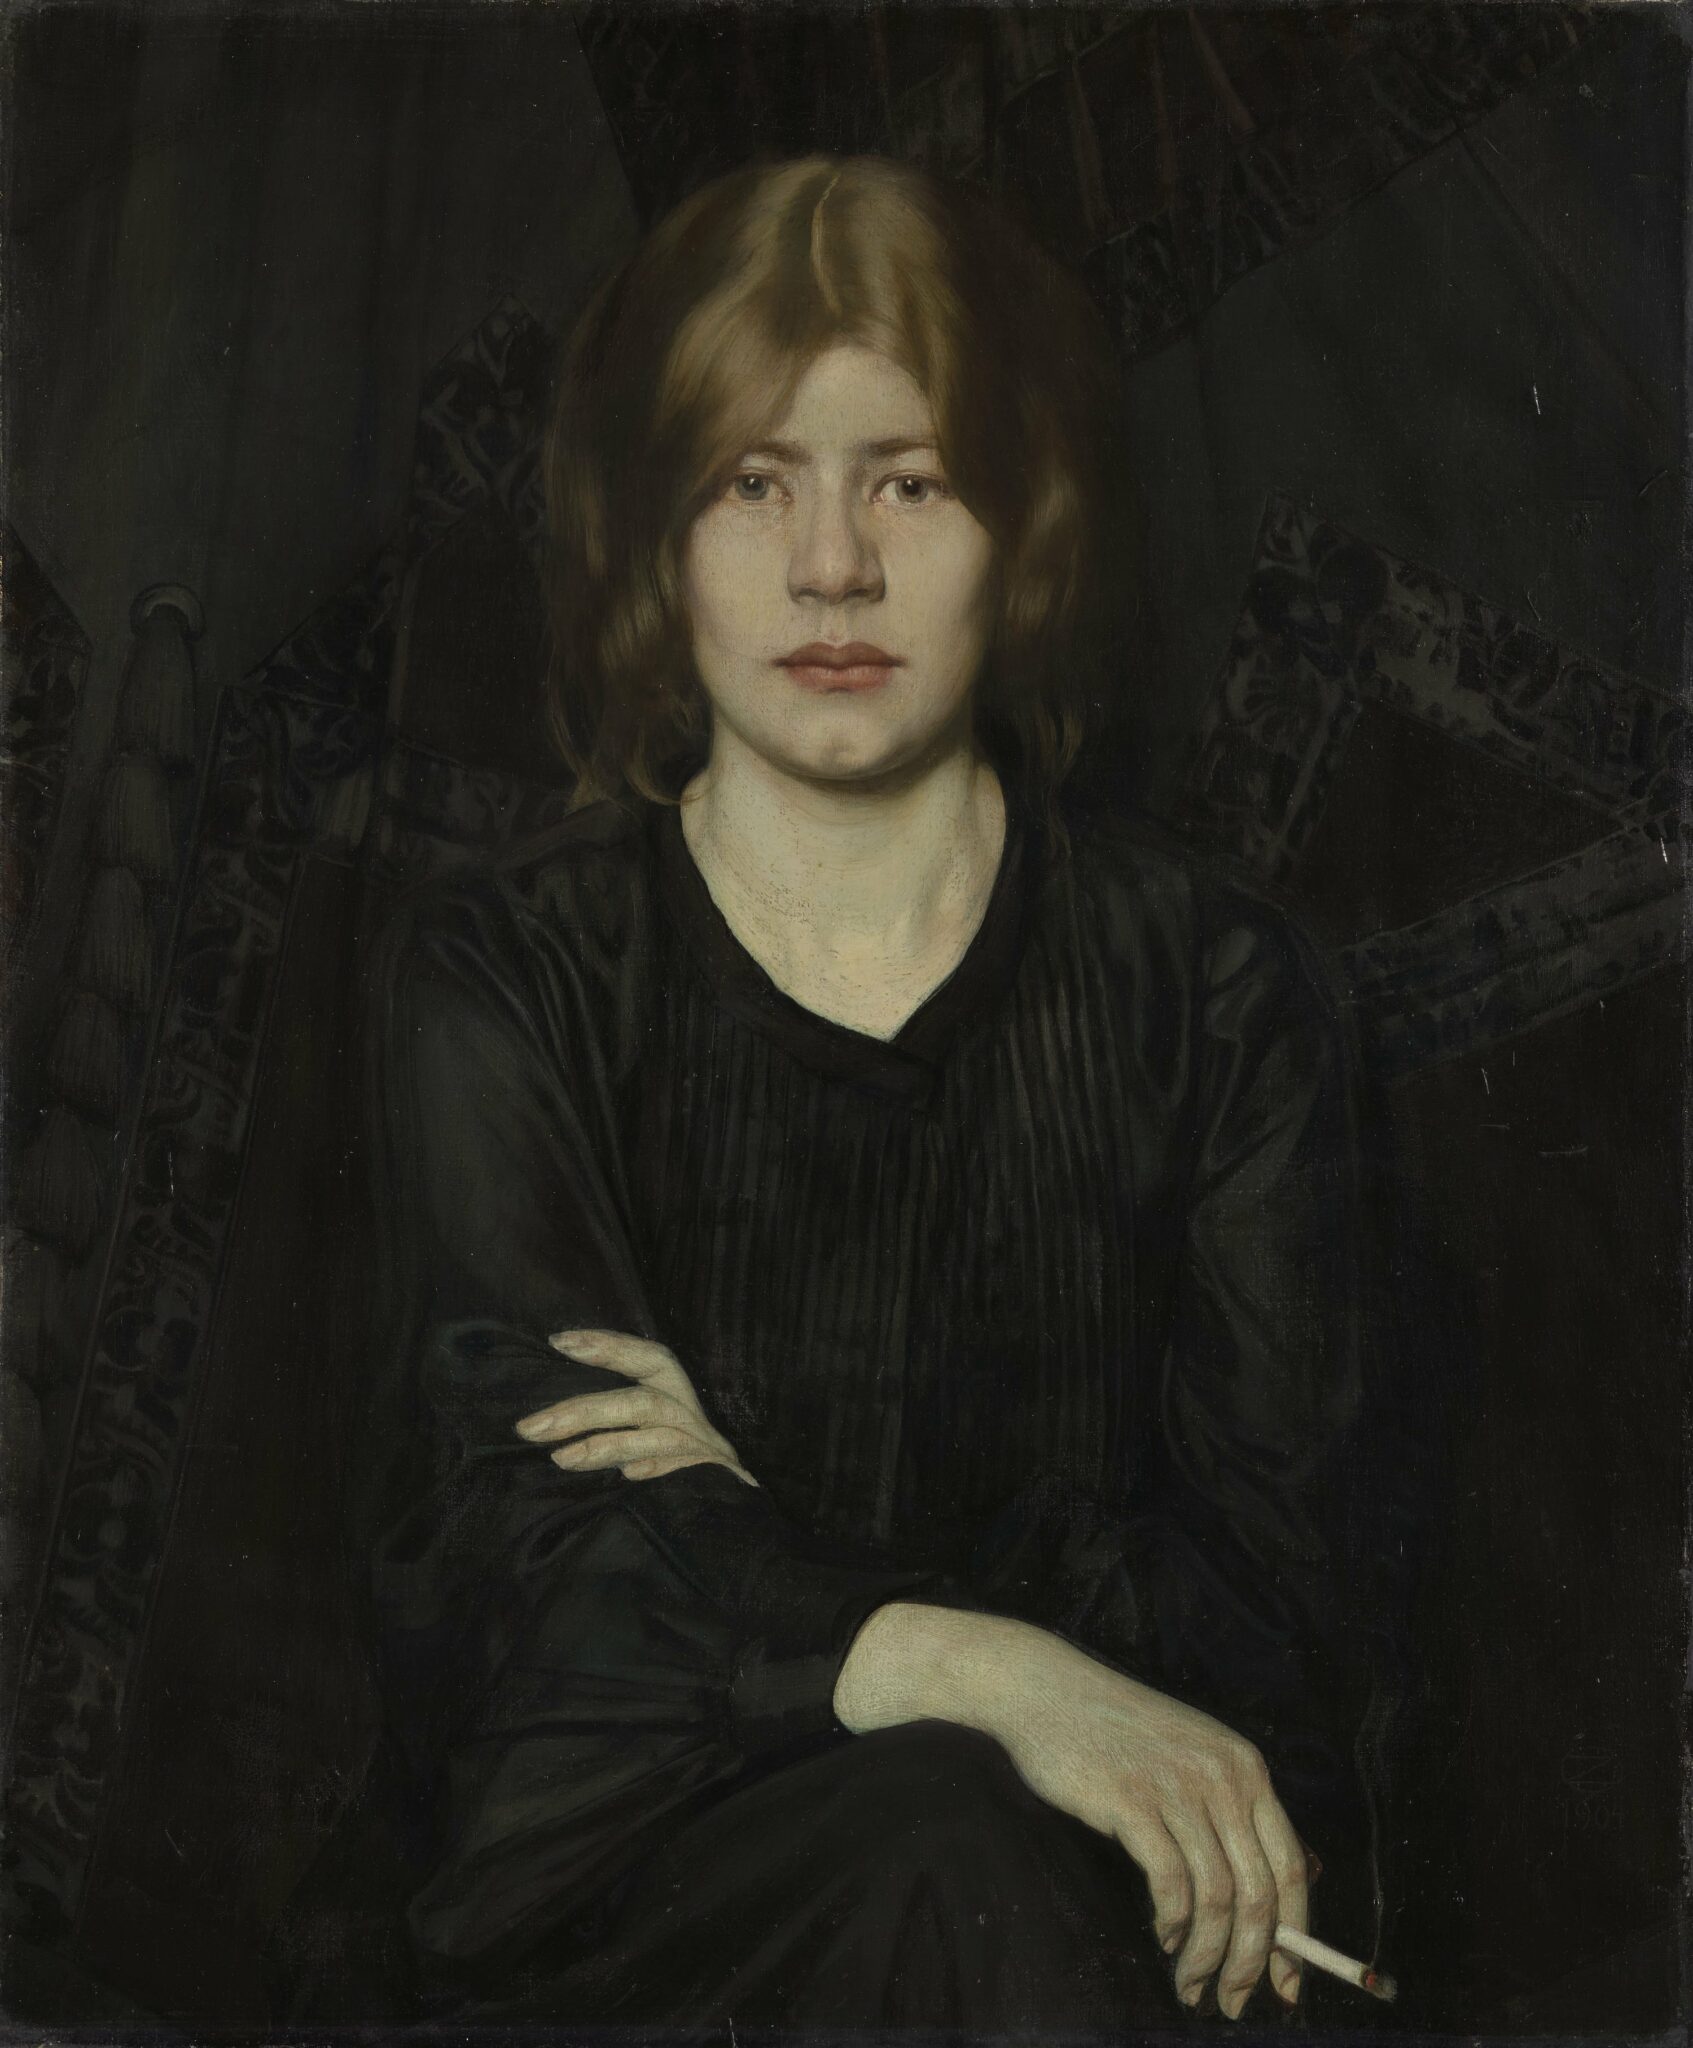 Oskar Zwintscher, Bildnis einer Dame mit Zigarette, 1904, Öl auf Leinwand, 82 x 68 cm